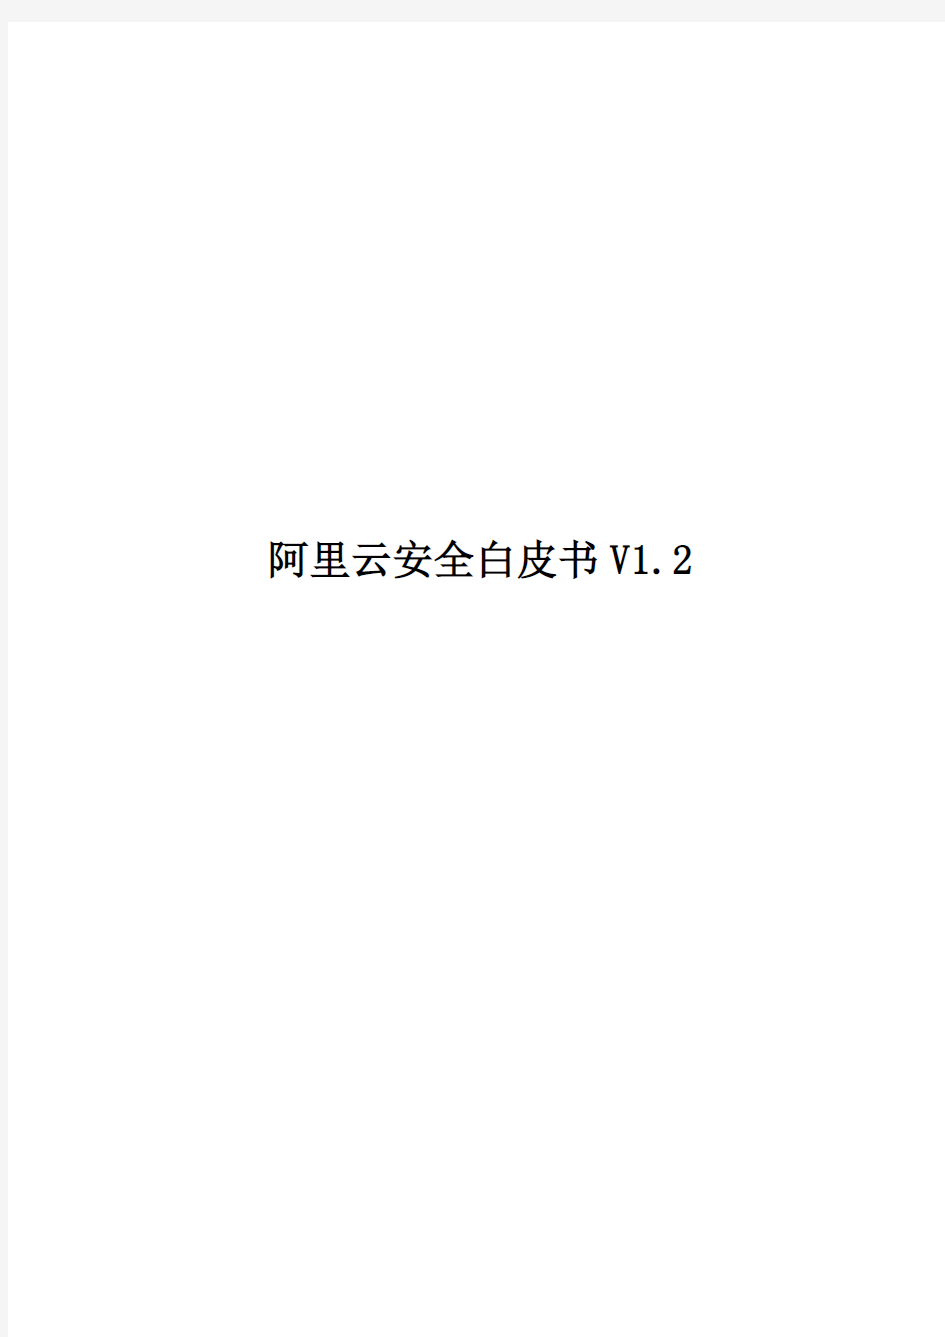 阿里云安全白皮书V1.2(2014年1月)